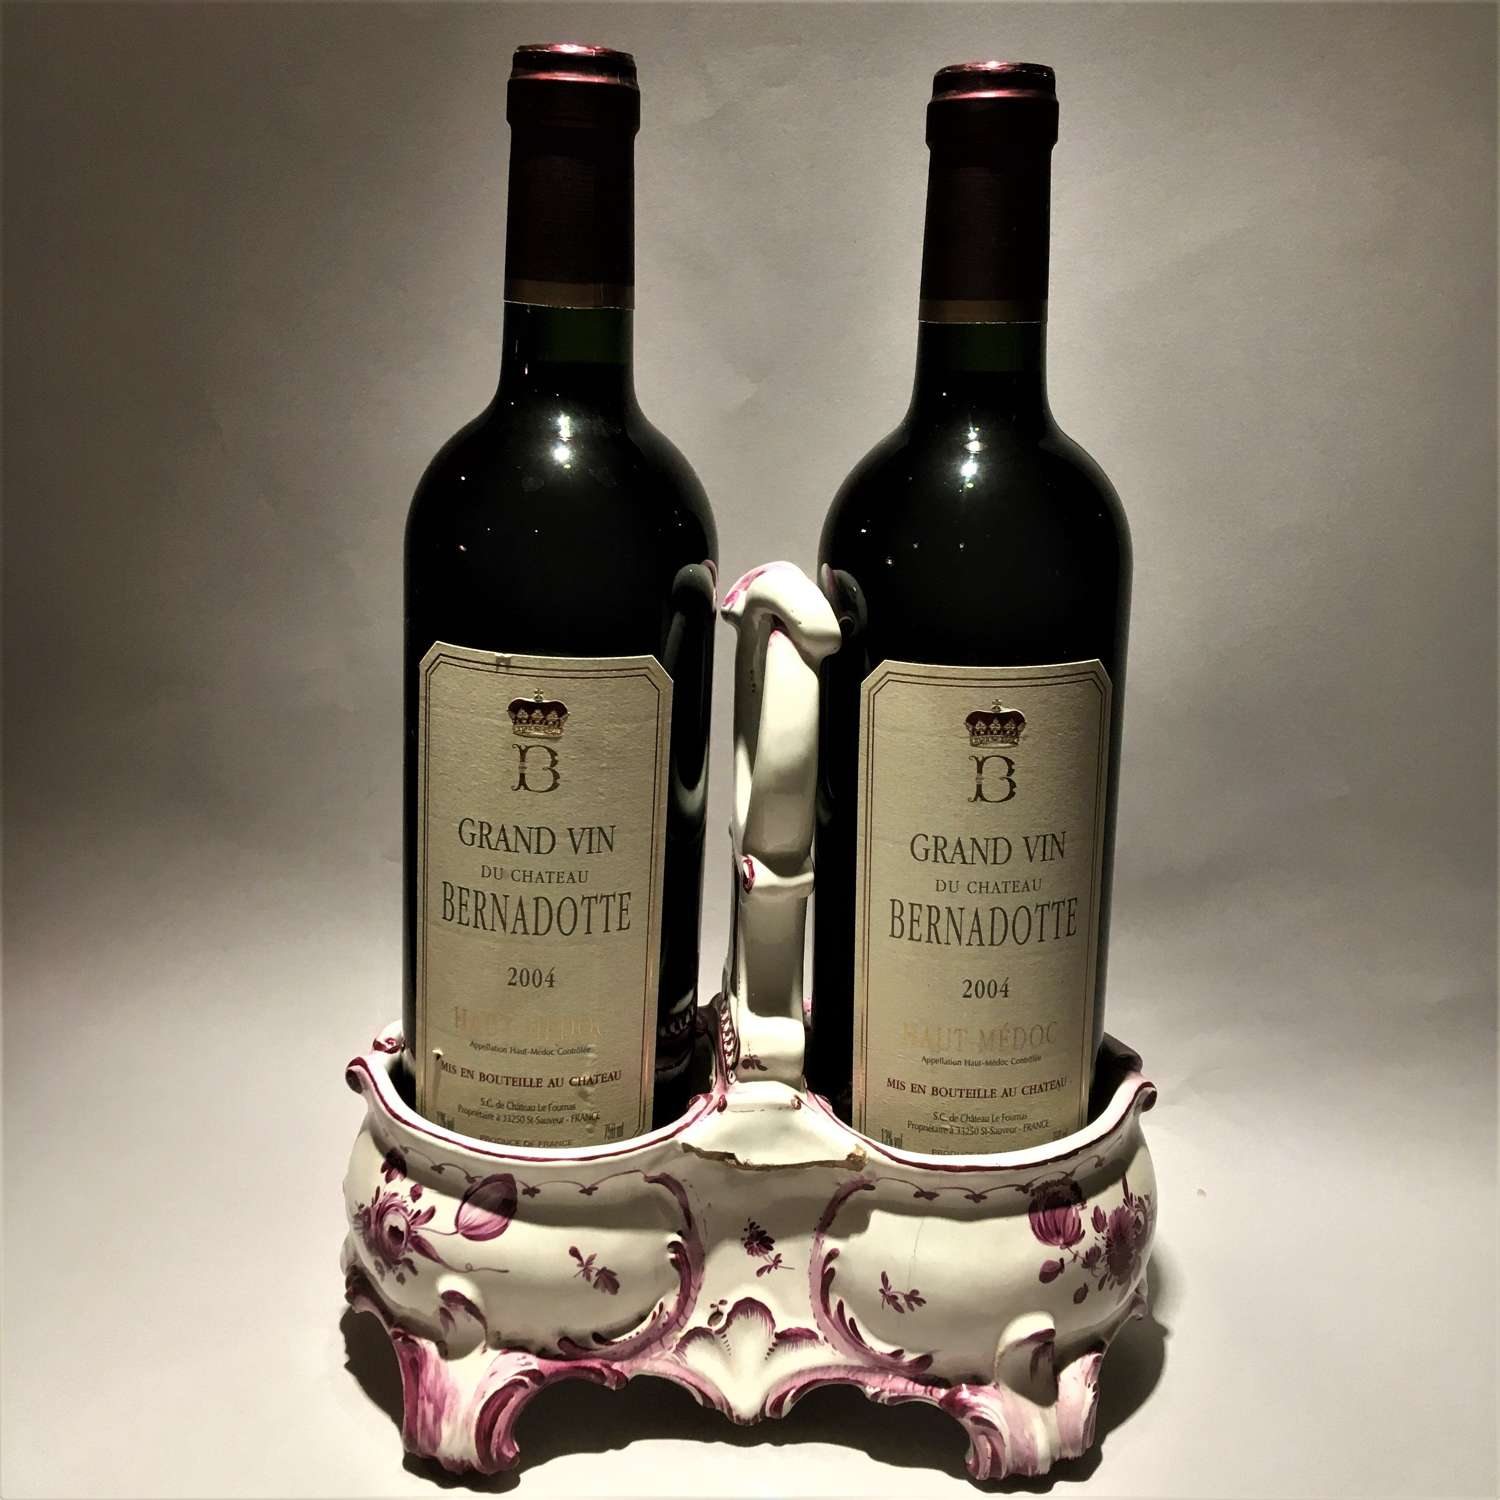 An unusual faïence, tin-glazed earthenware, double wine bottle coaste